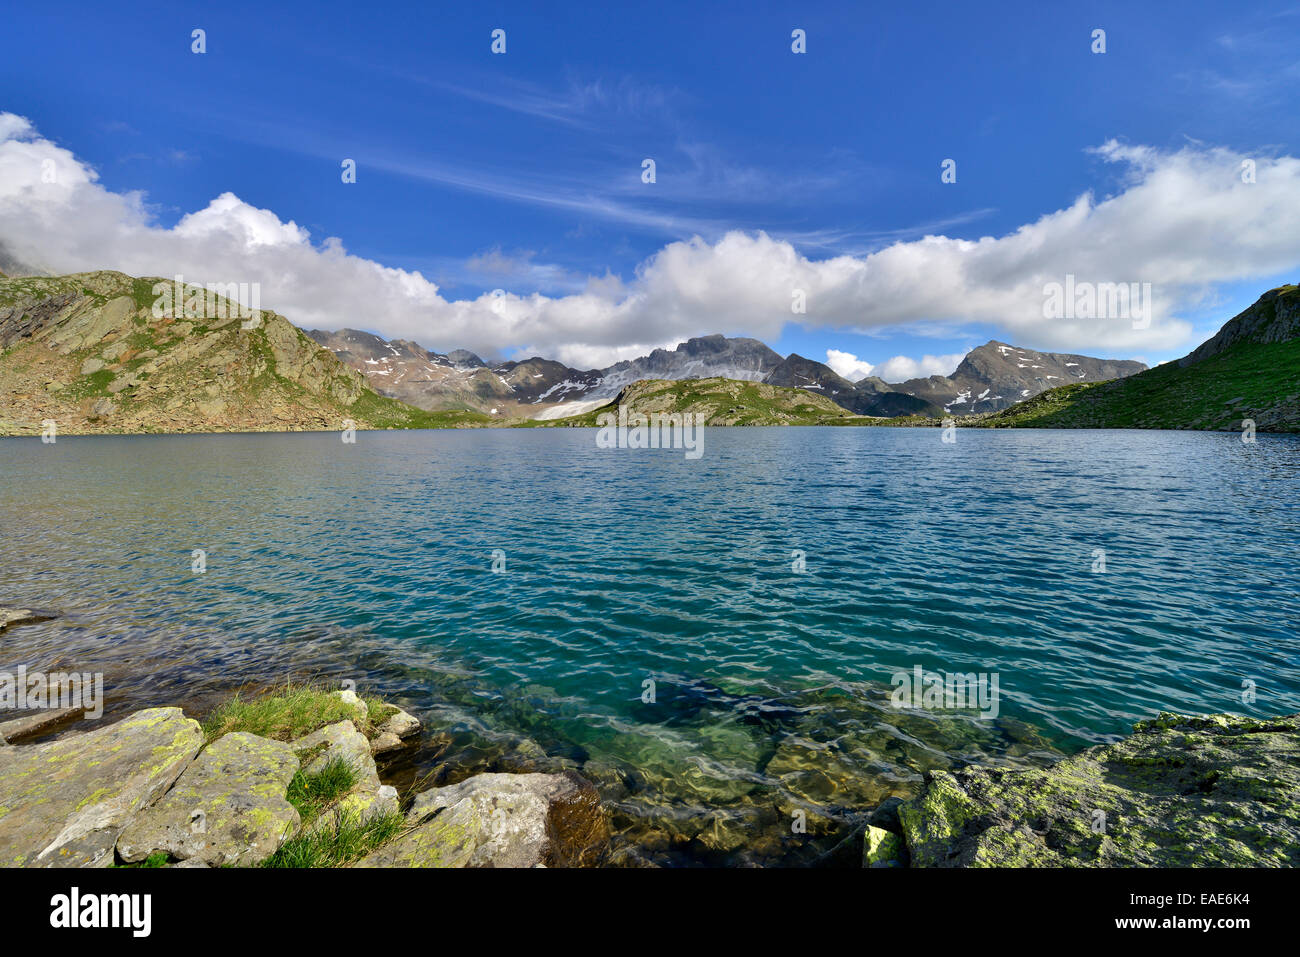 Grosser Schwarzsee lake or Lago Nero, Schneeberger Weisse Mountain at the rear, Stubai Alps, Tyrol, Austria Stock Photo